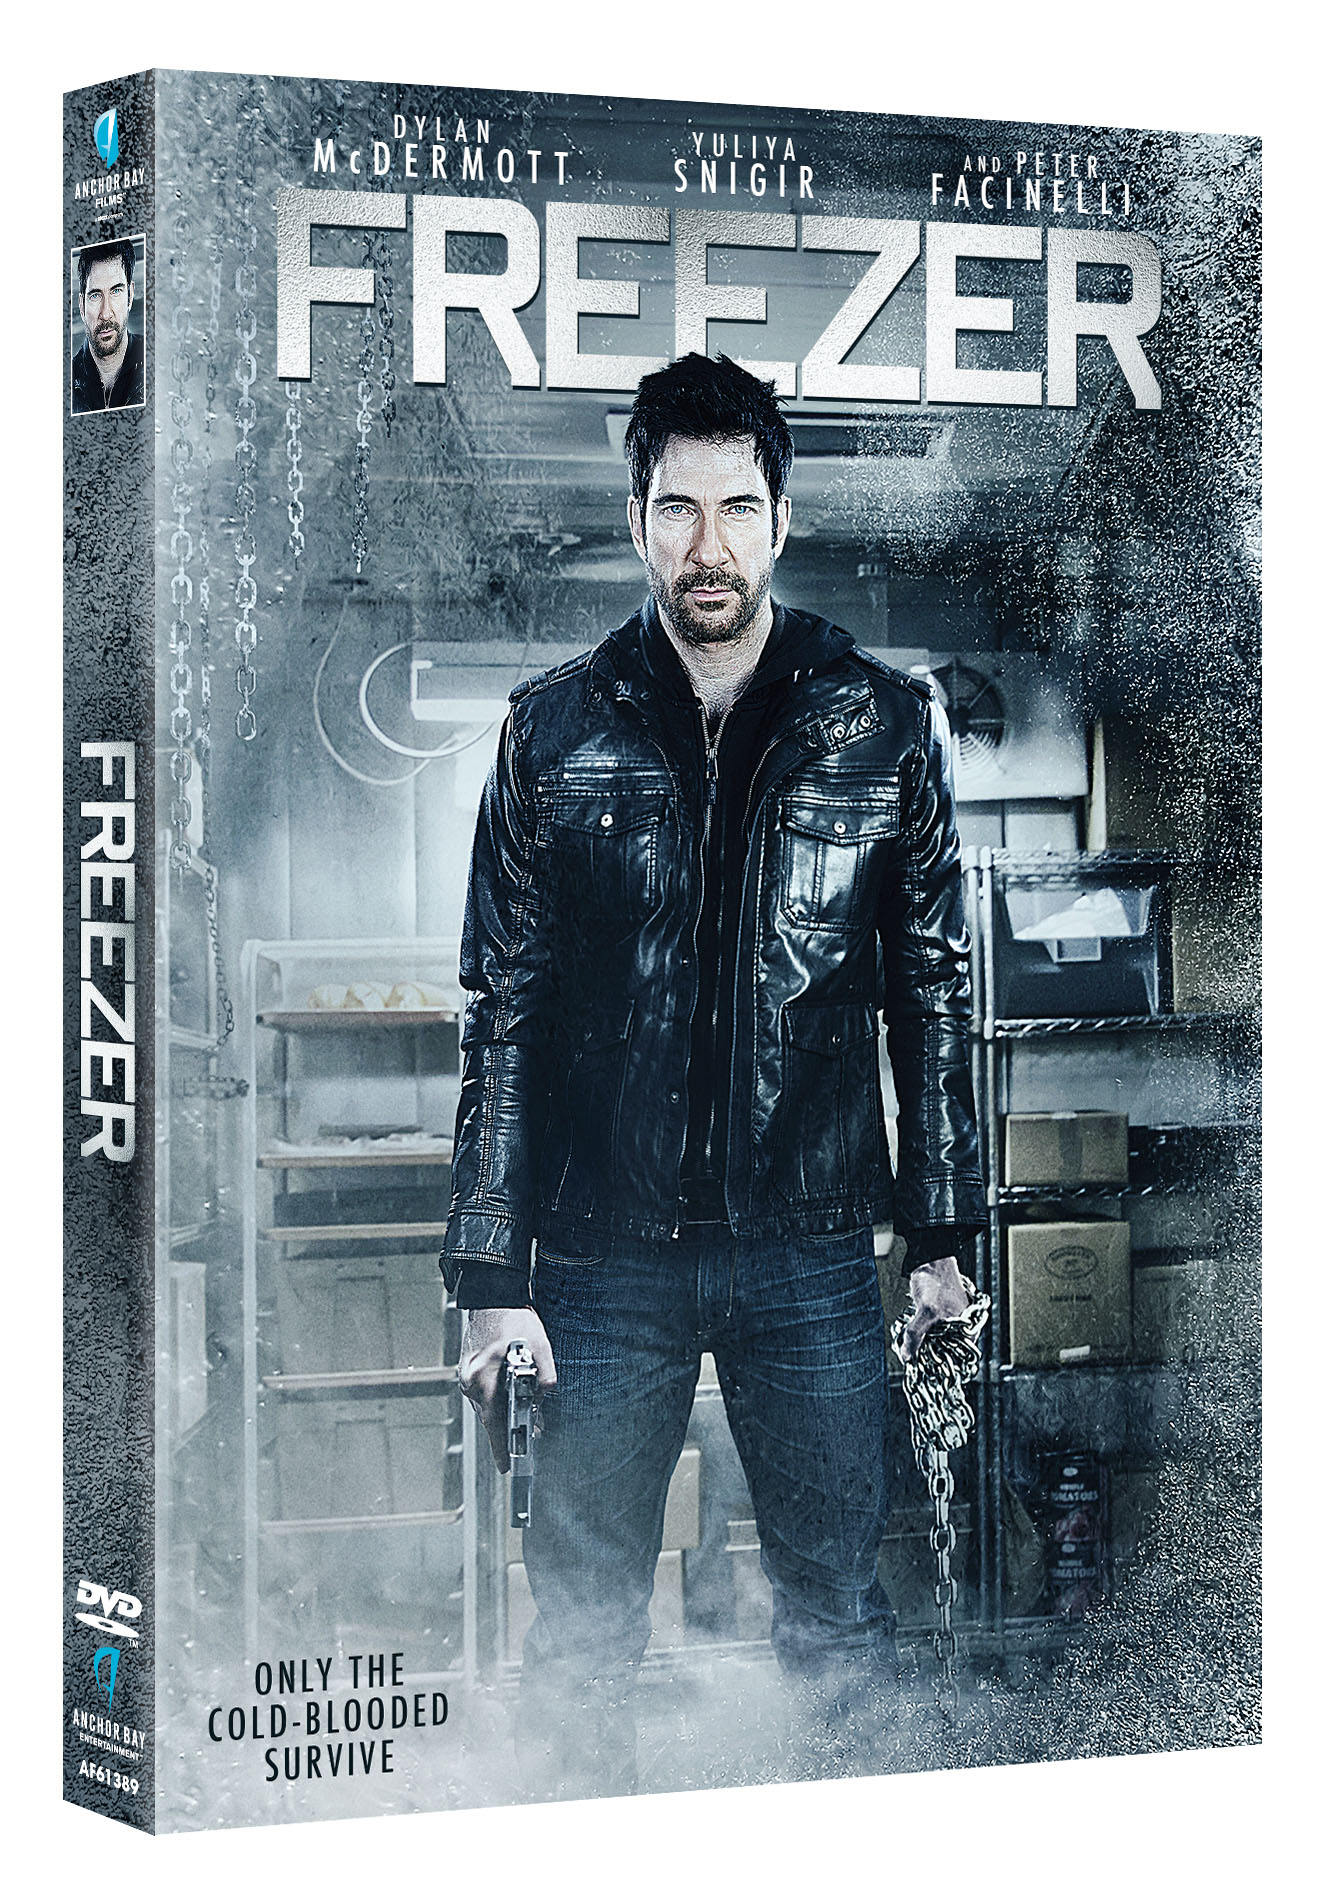 Dylan McDermott in Freezer (2014)